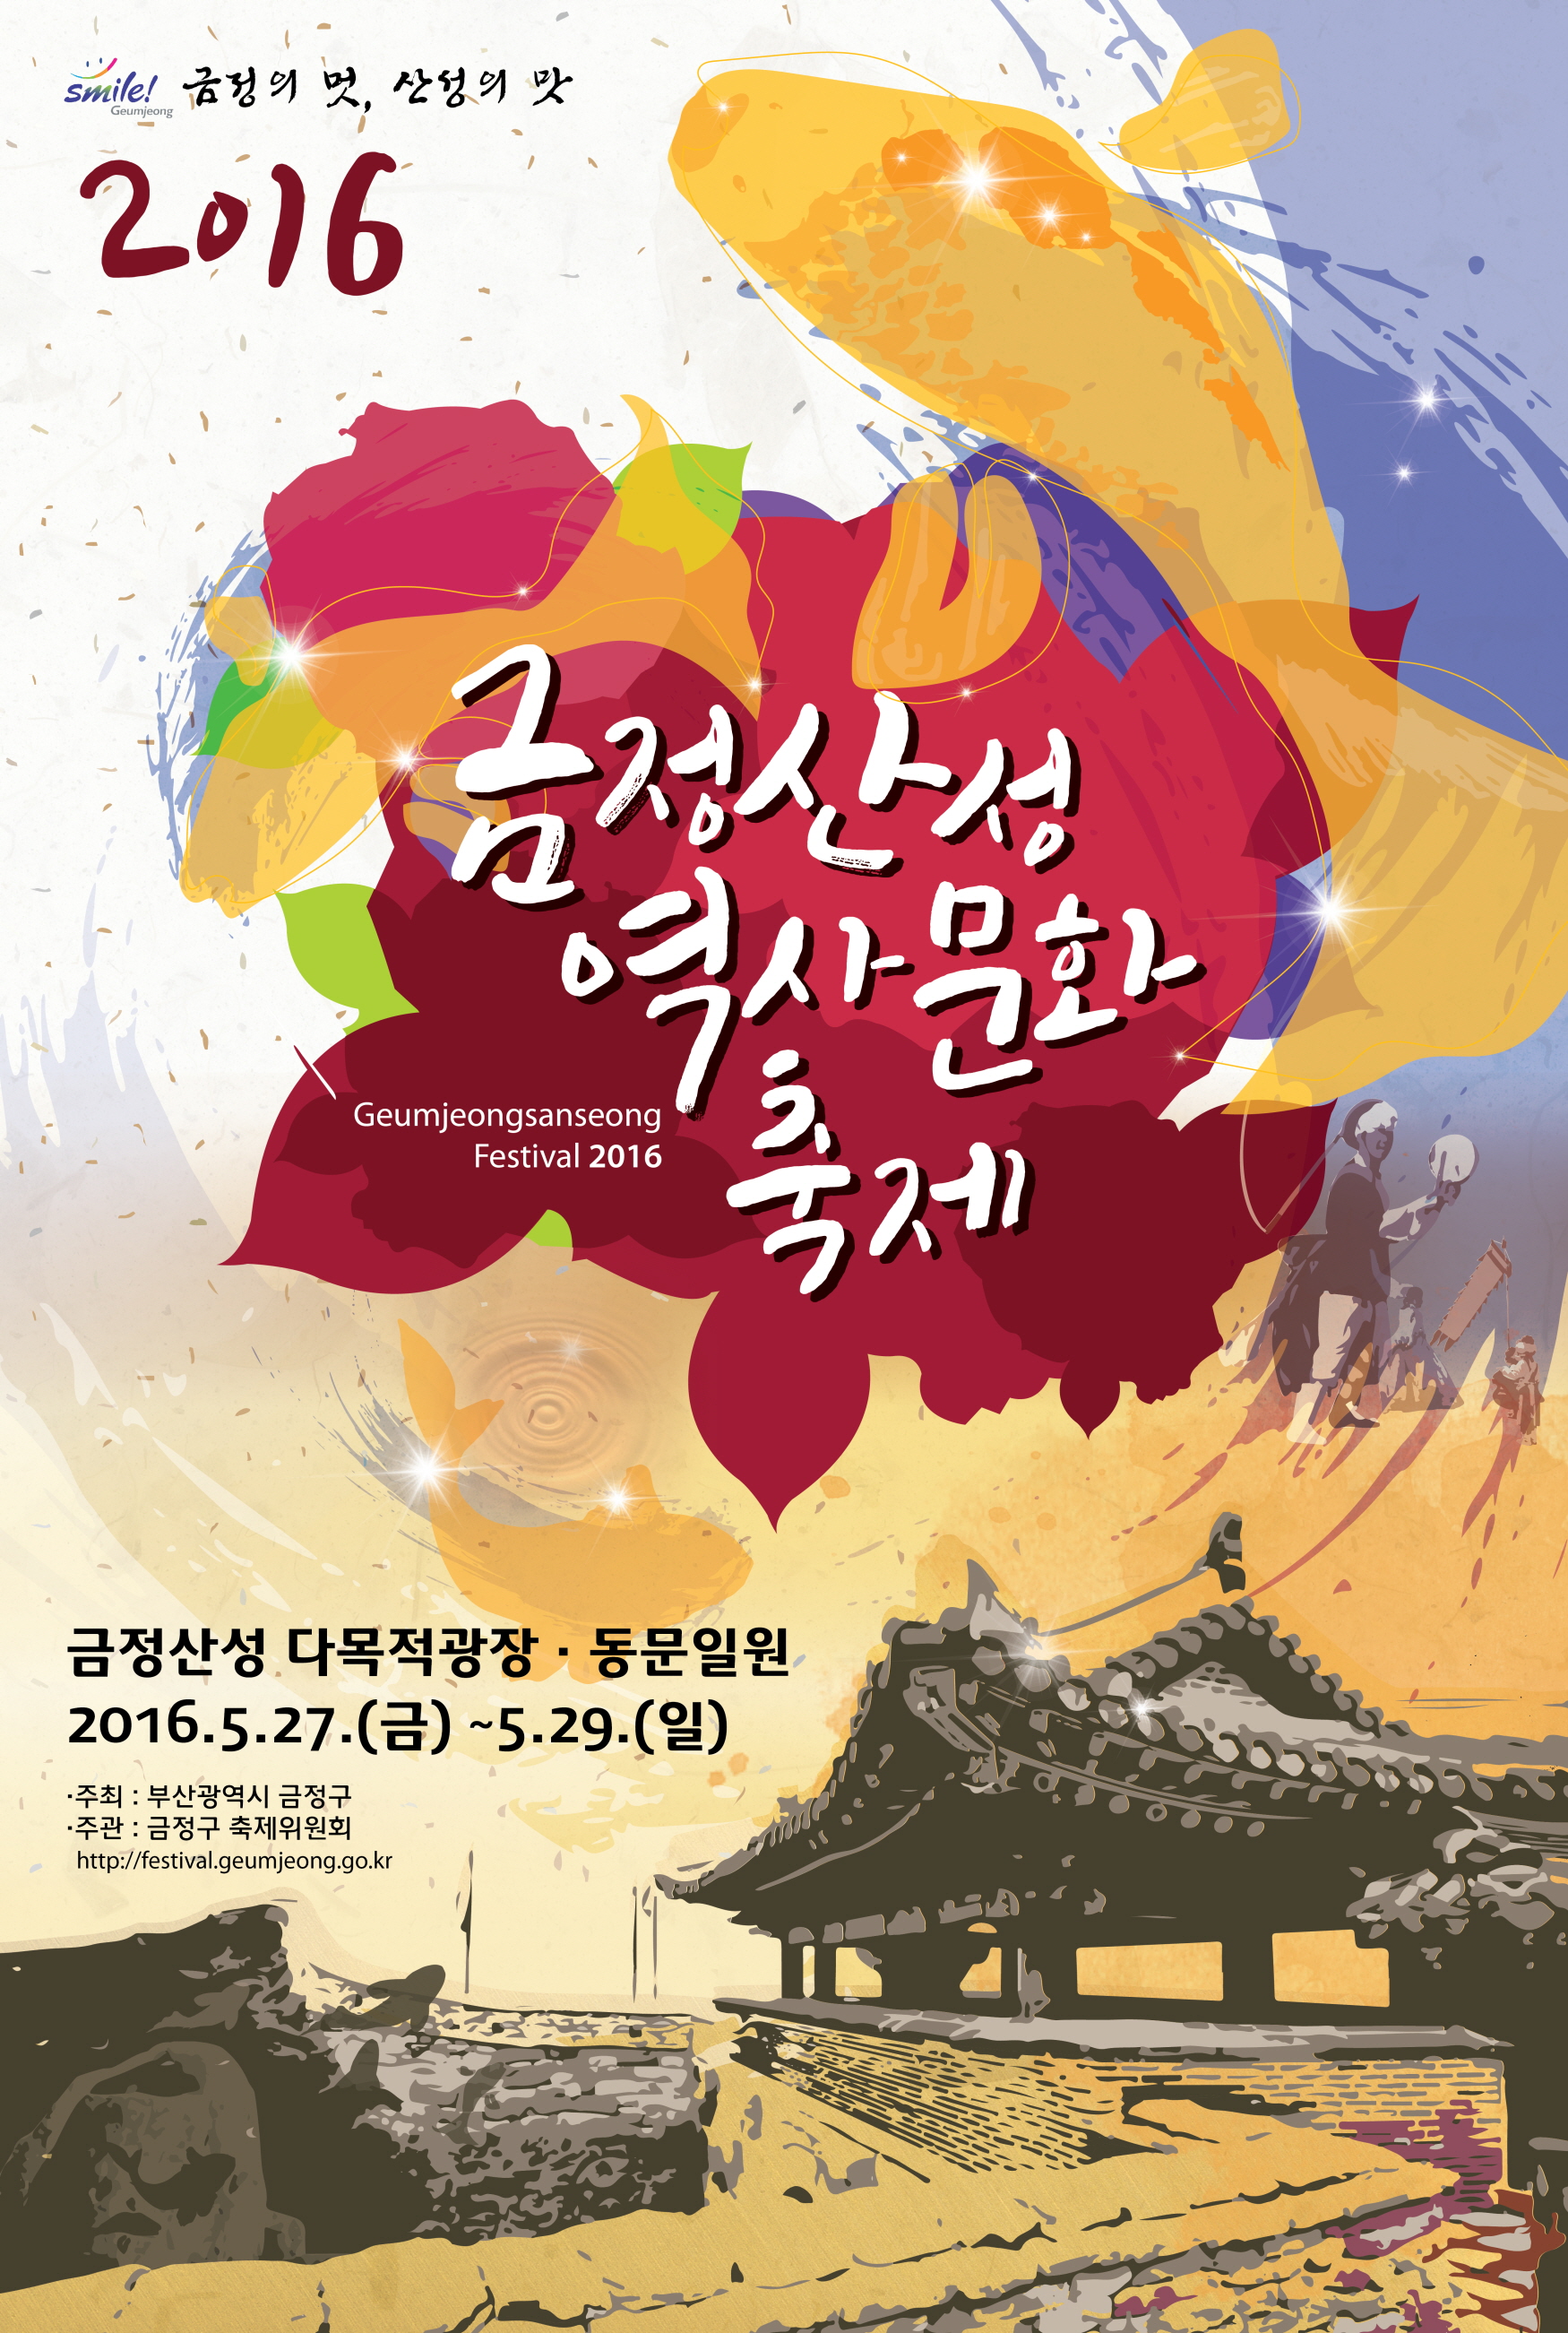 「금정산성 역사문화축제 2016」 주제 및 포스터 공모 수상작 발표 게시물의 첨부 이미지 1